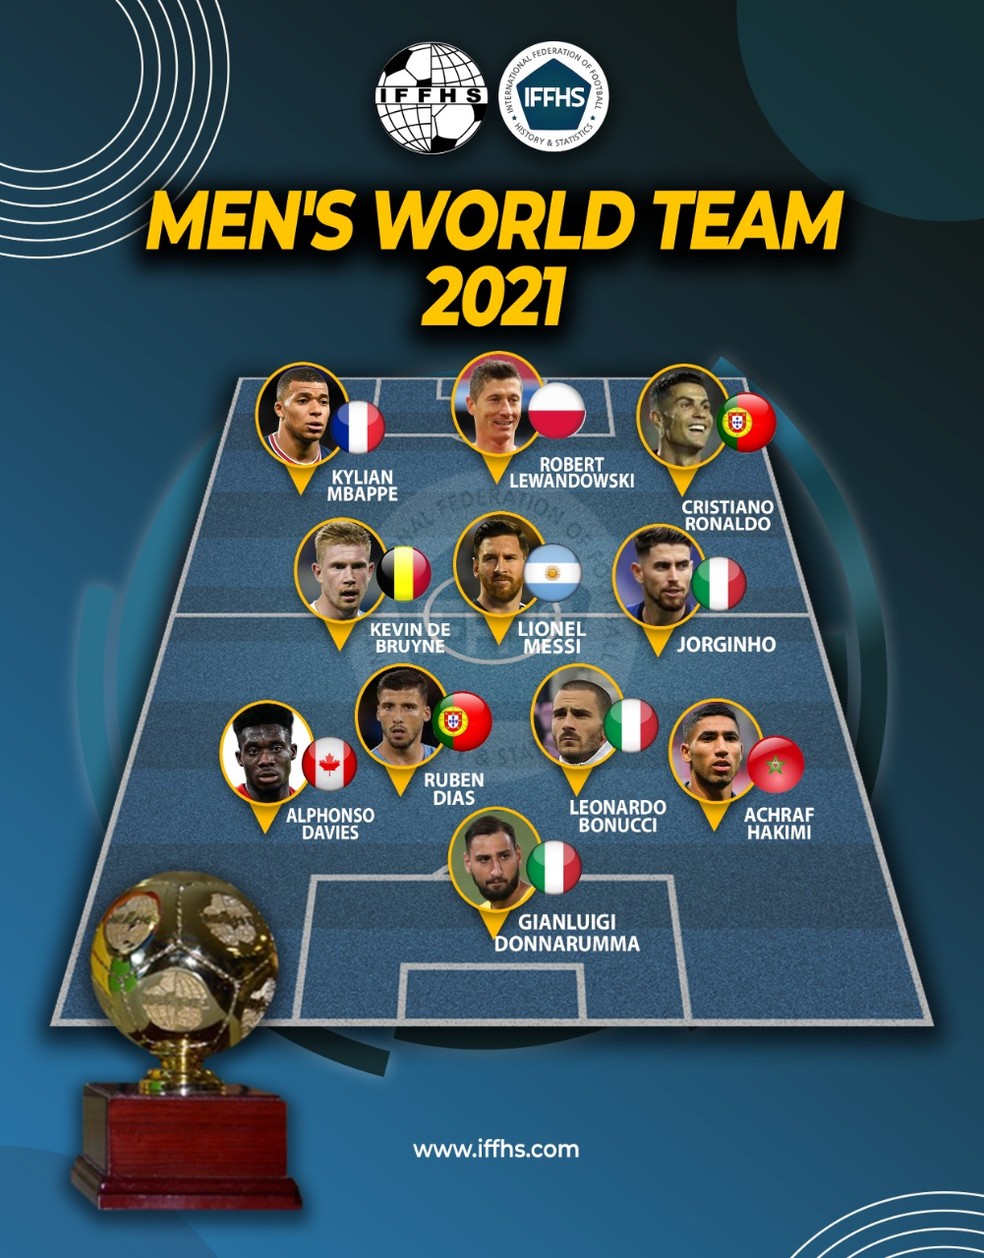 Seleção dos 11 melhores jogadores do mundo em 2021, segundo o IFFHS — Foto: Divulgação / IFFHS